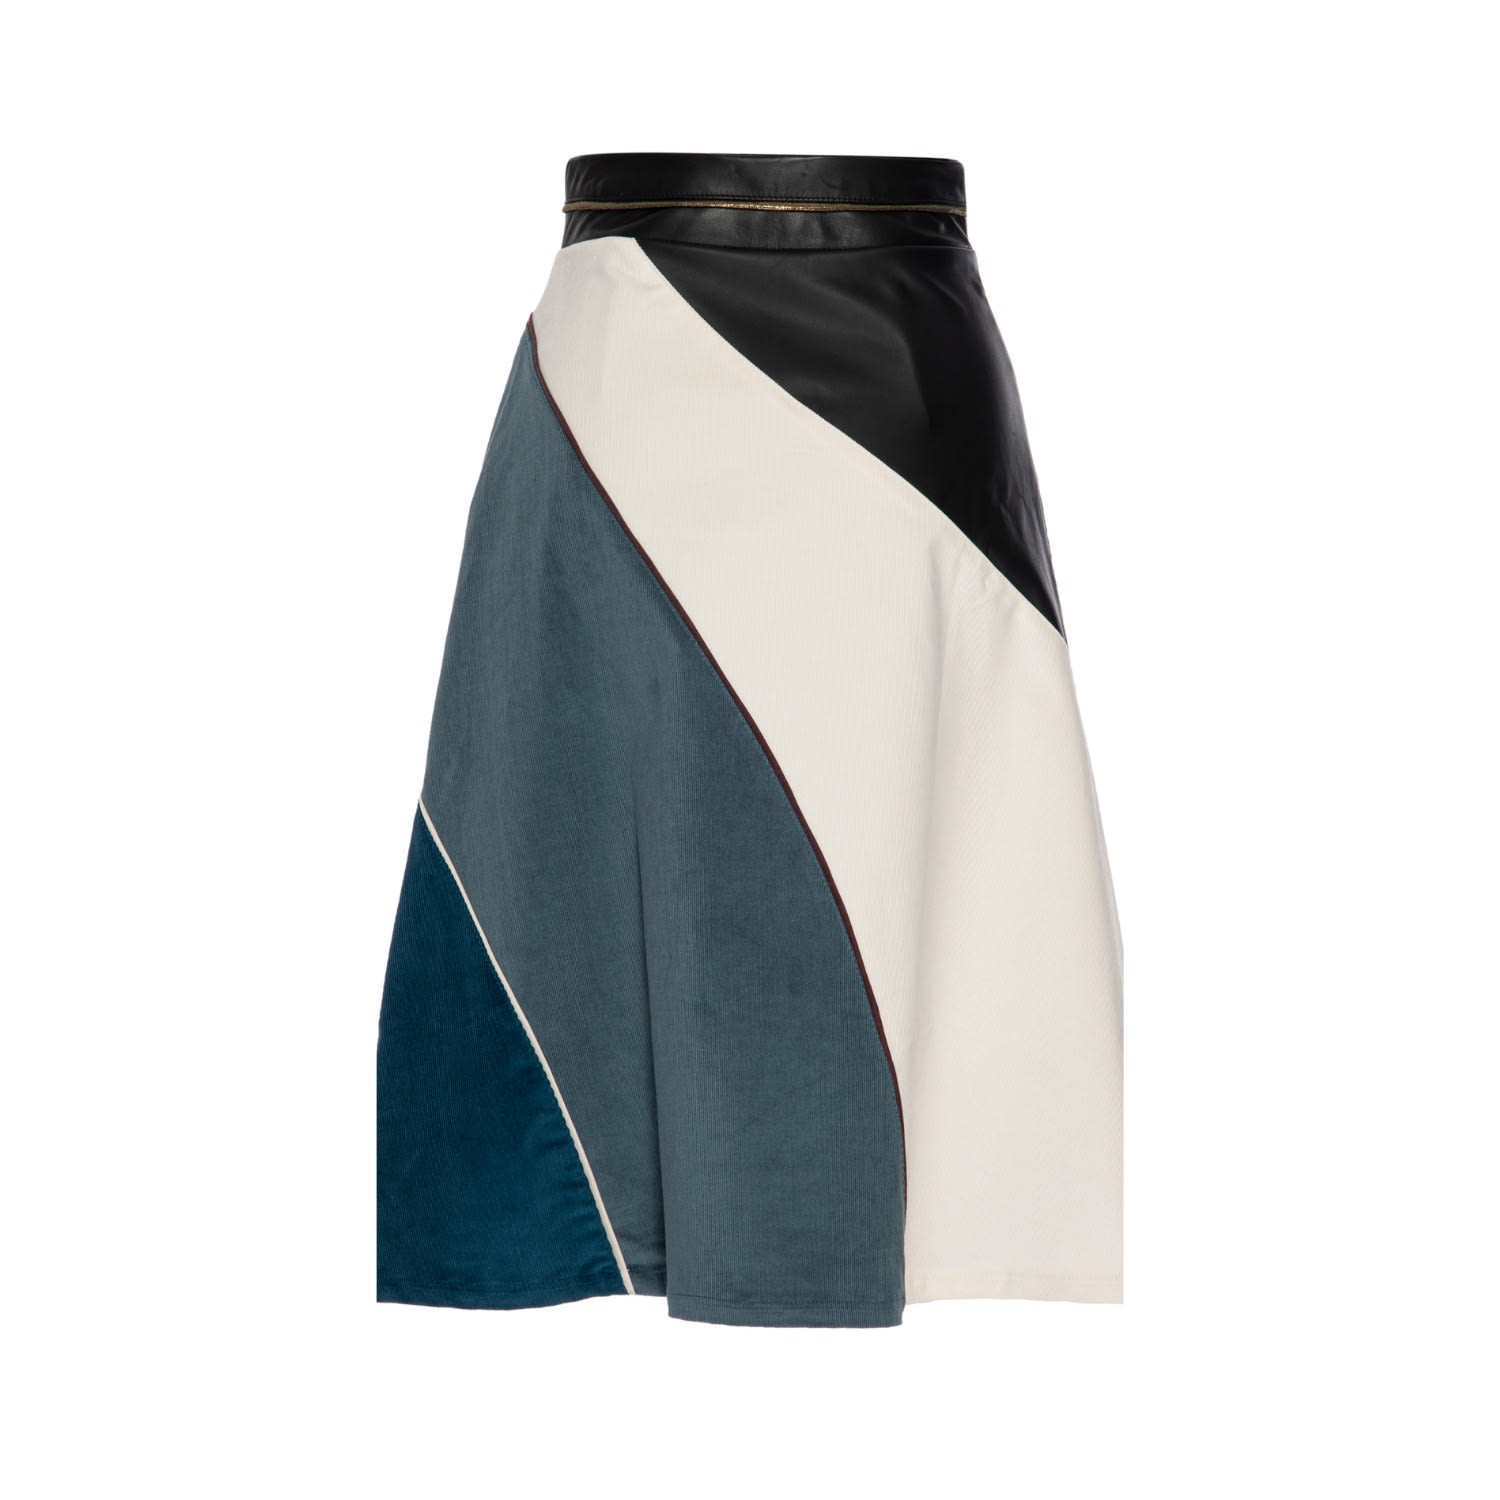 Lahive Harper A-line Multi-color Skirt In Black